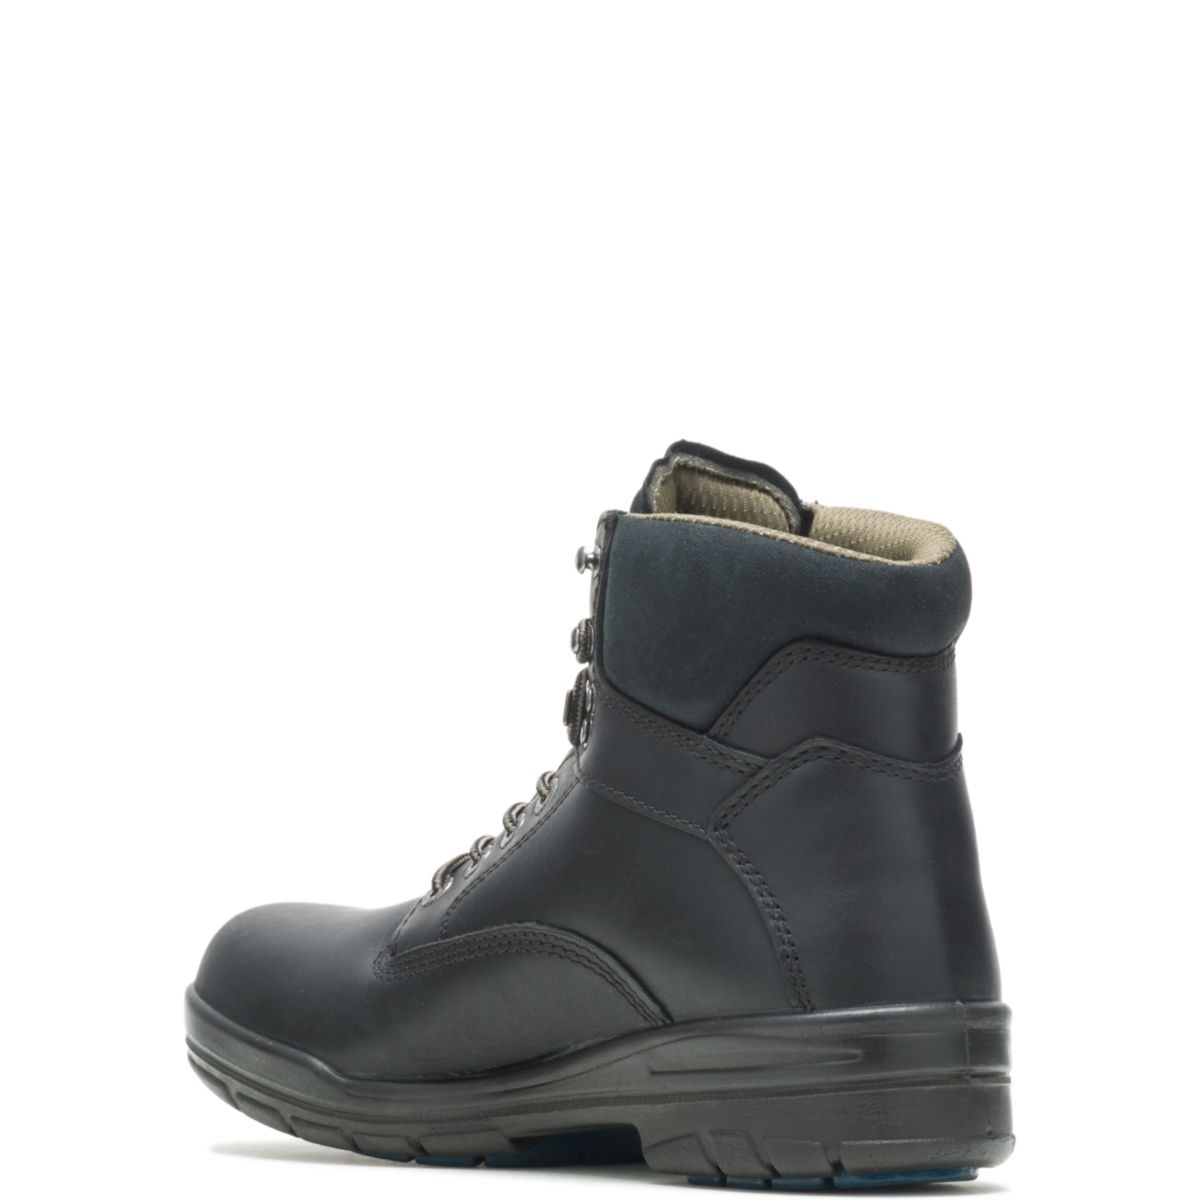 WOLVERINE Men's 6 DuraShocksÂ® Slip Resistant Direct-Attached Lined Soft Toe Work Boot Black - W03123 14 WIDE BLACK - BLACK, 10.5